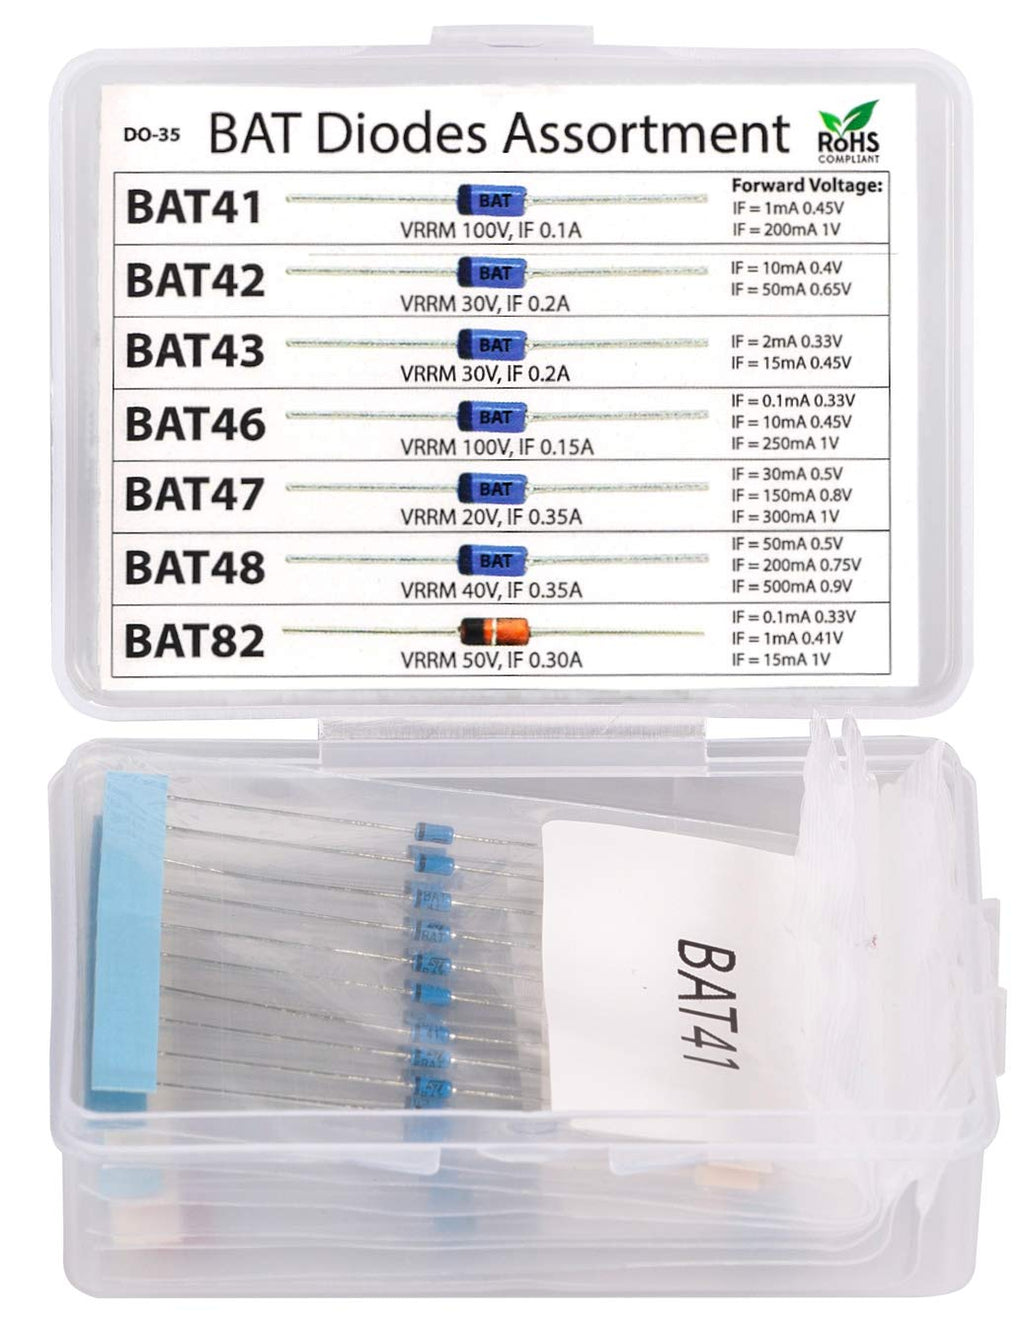 [Australia - AusPower] - 70 pcs BAT41, BAT42, BAT43, BAT46, BAT47, BAT48, BAT82 Blue Schottky Diode Assortment Kit 